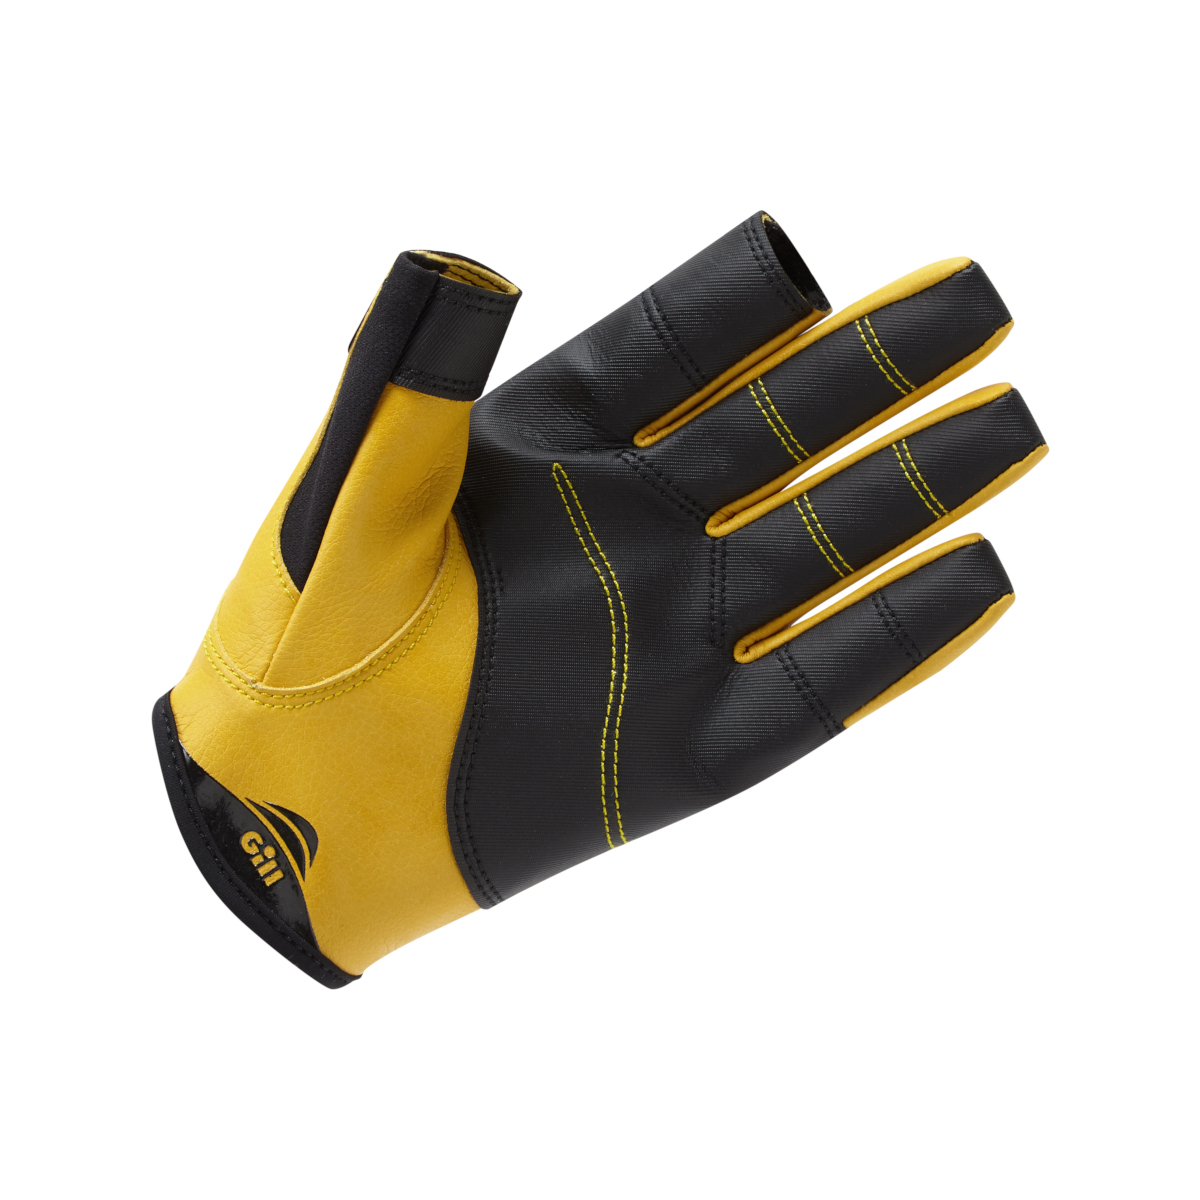 Gill Pro Gloves zeilhandschoenen gesloten vinger zwart, maat S